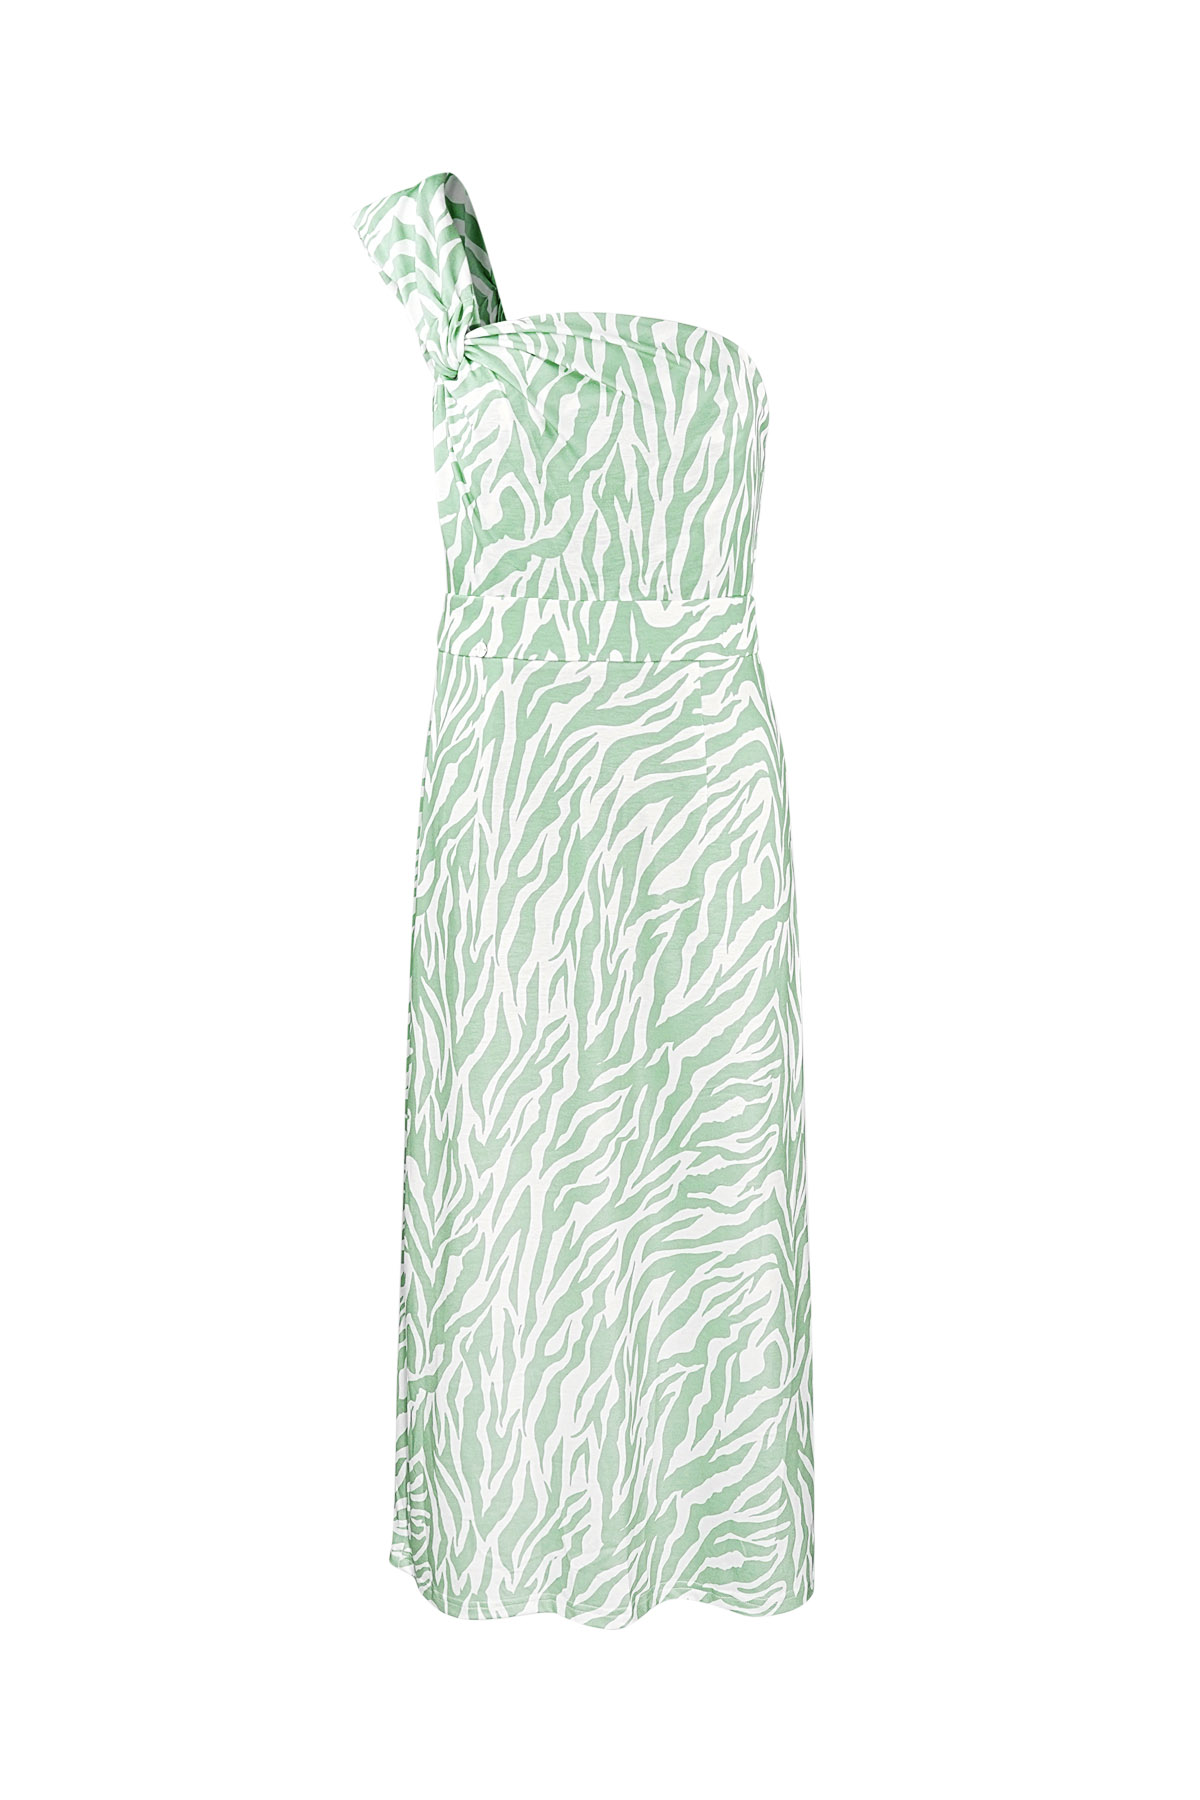 Einschultriges Zebrakleid - grün